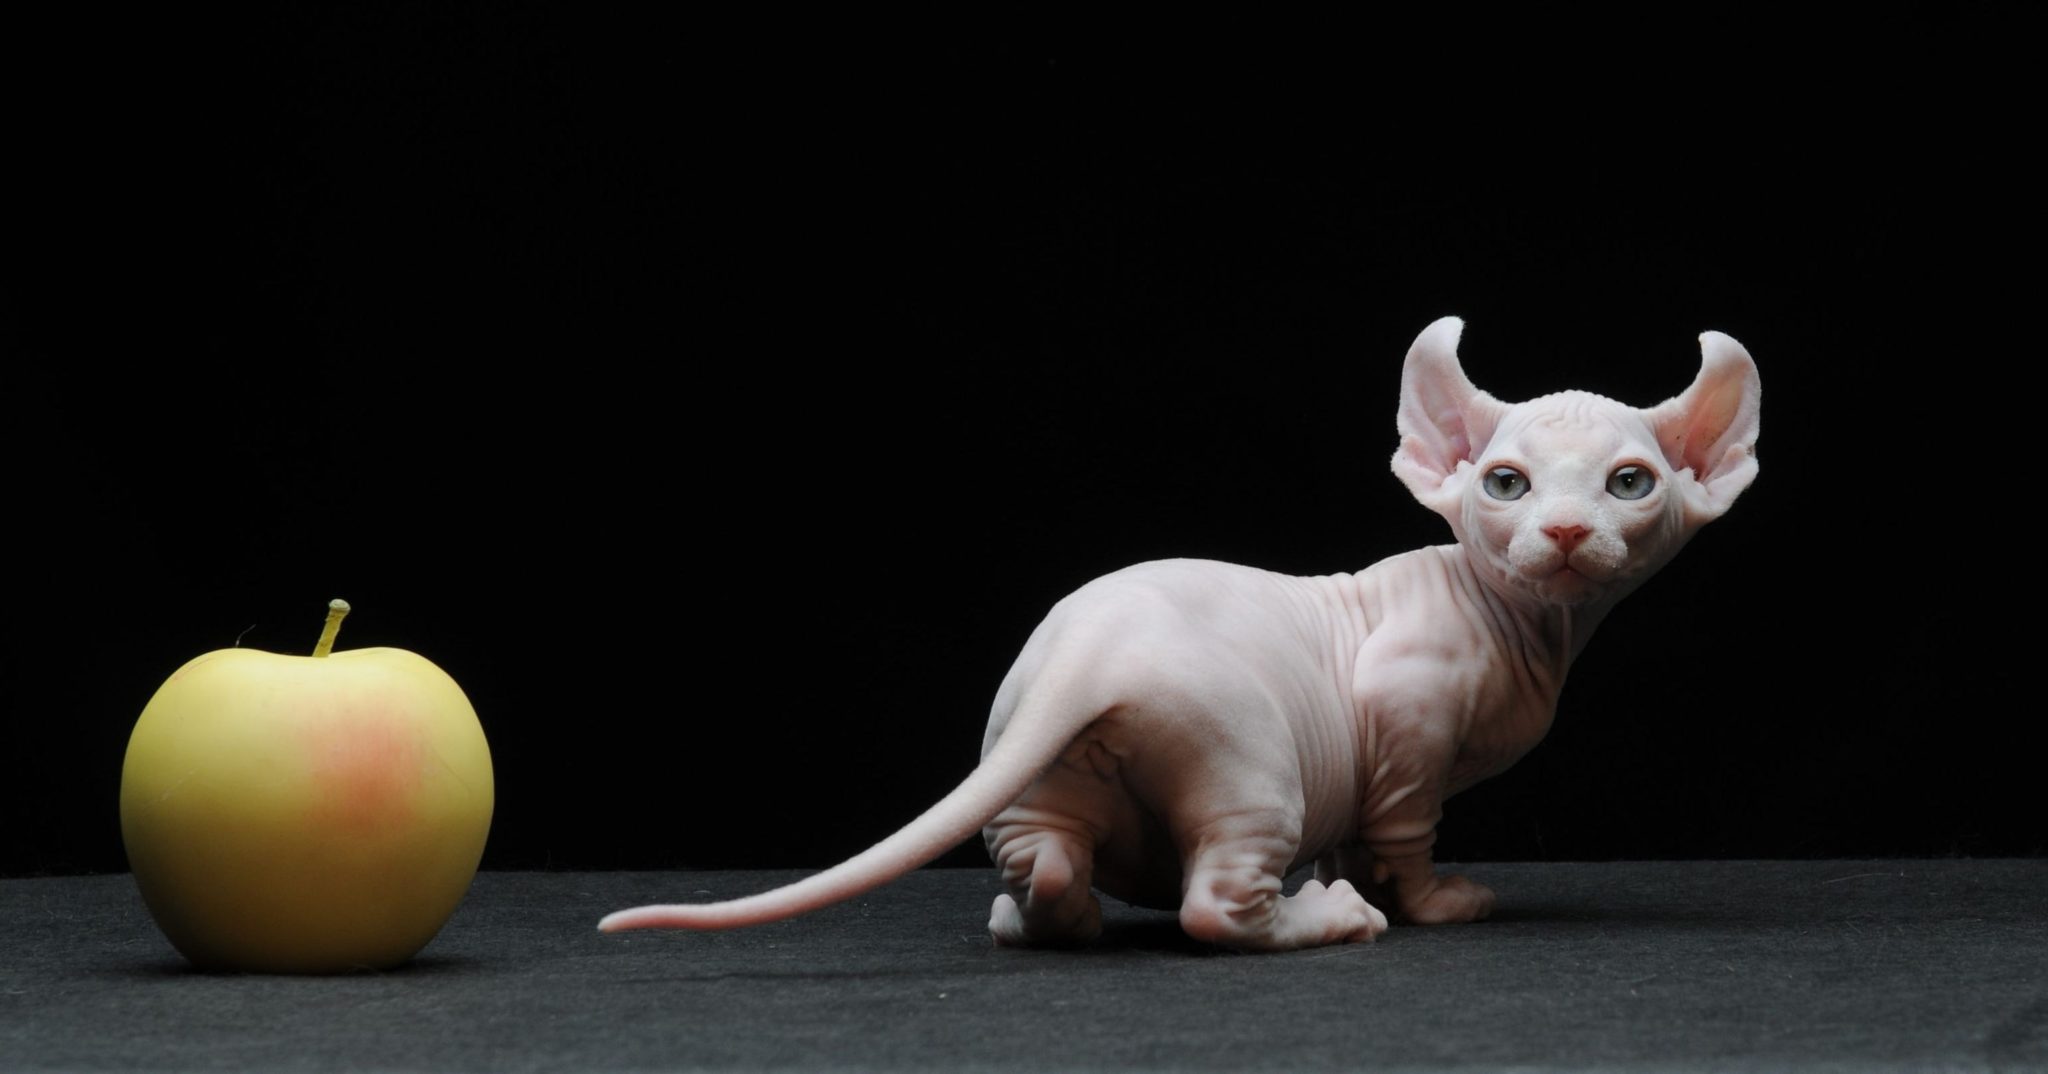 8 вечных котят: самые маленькие породы кошек